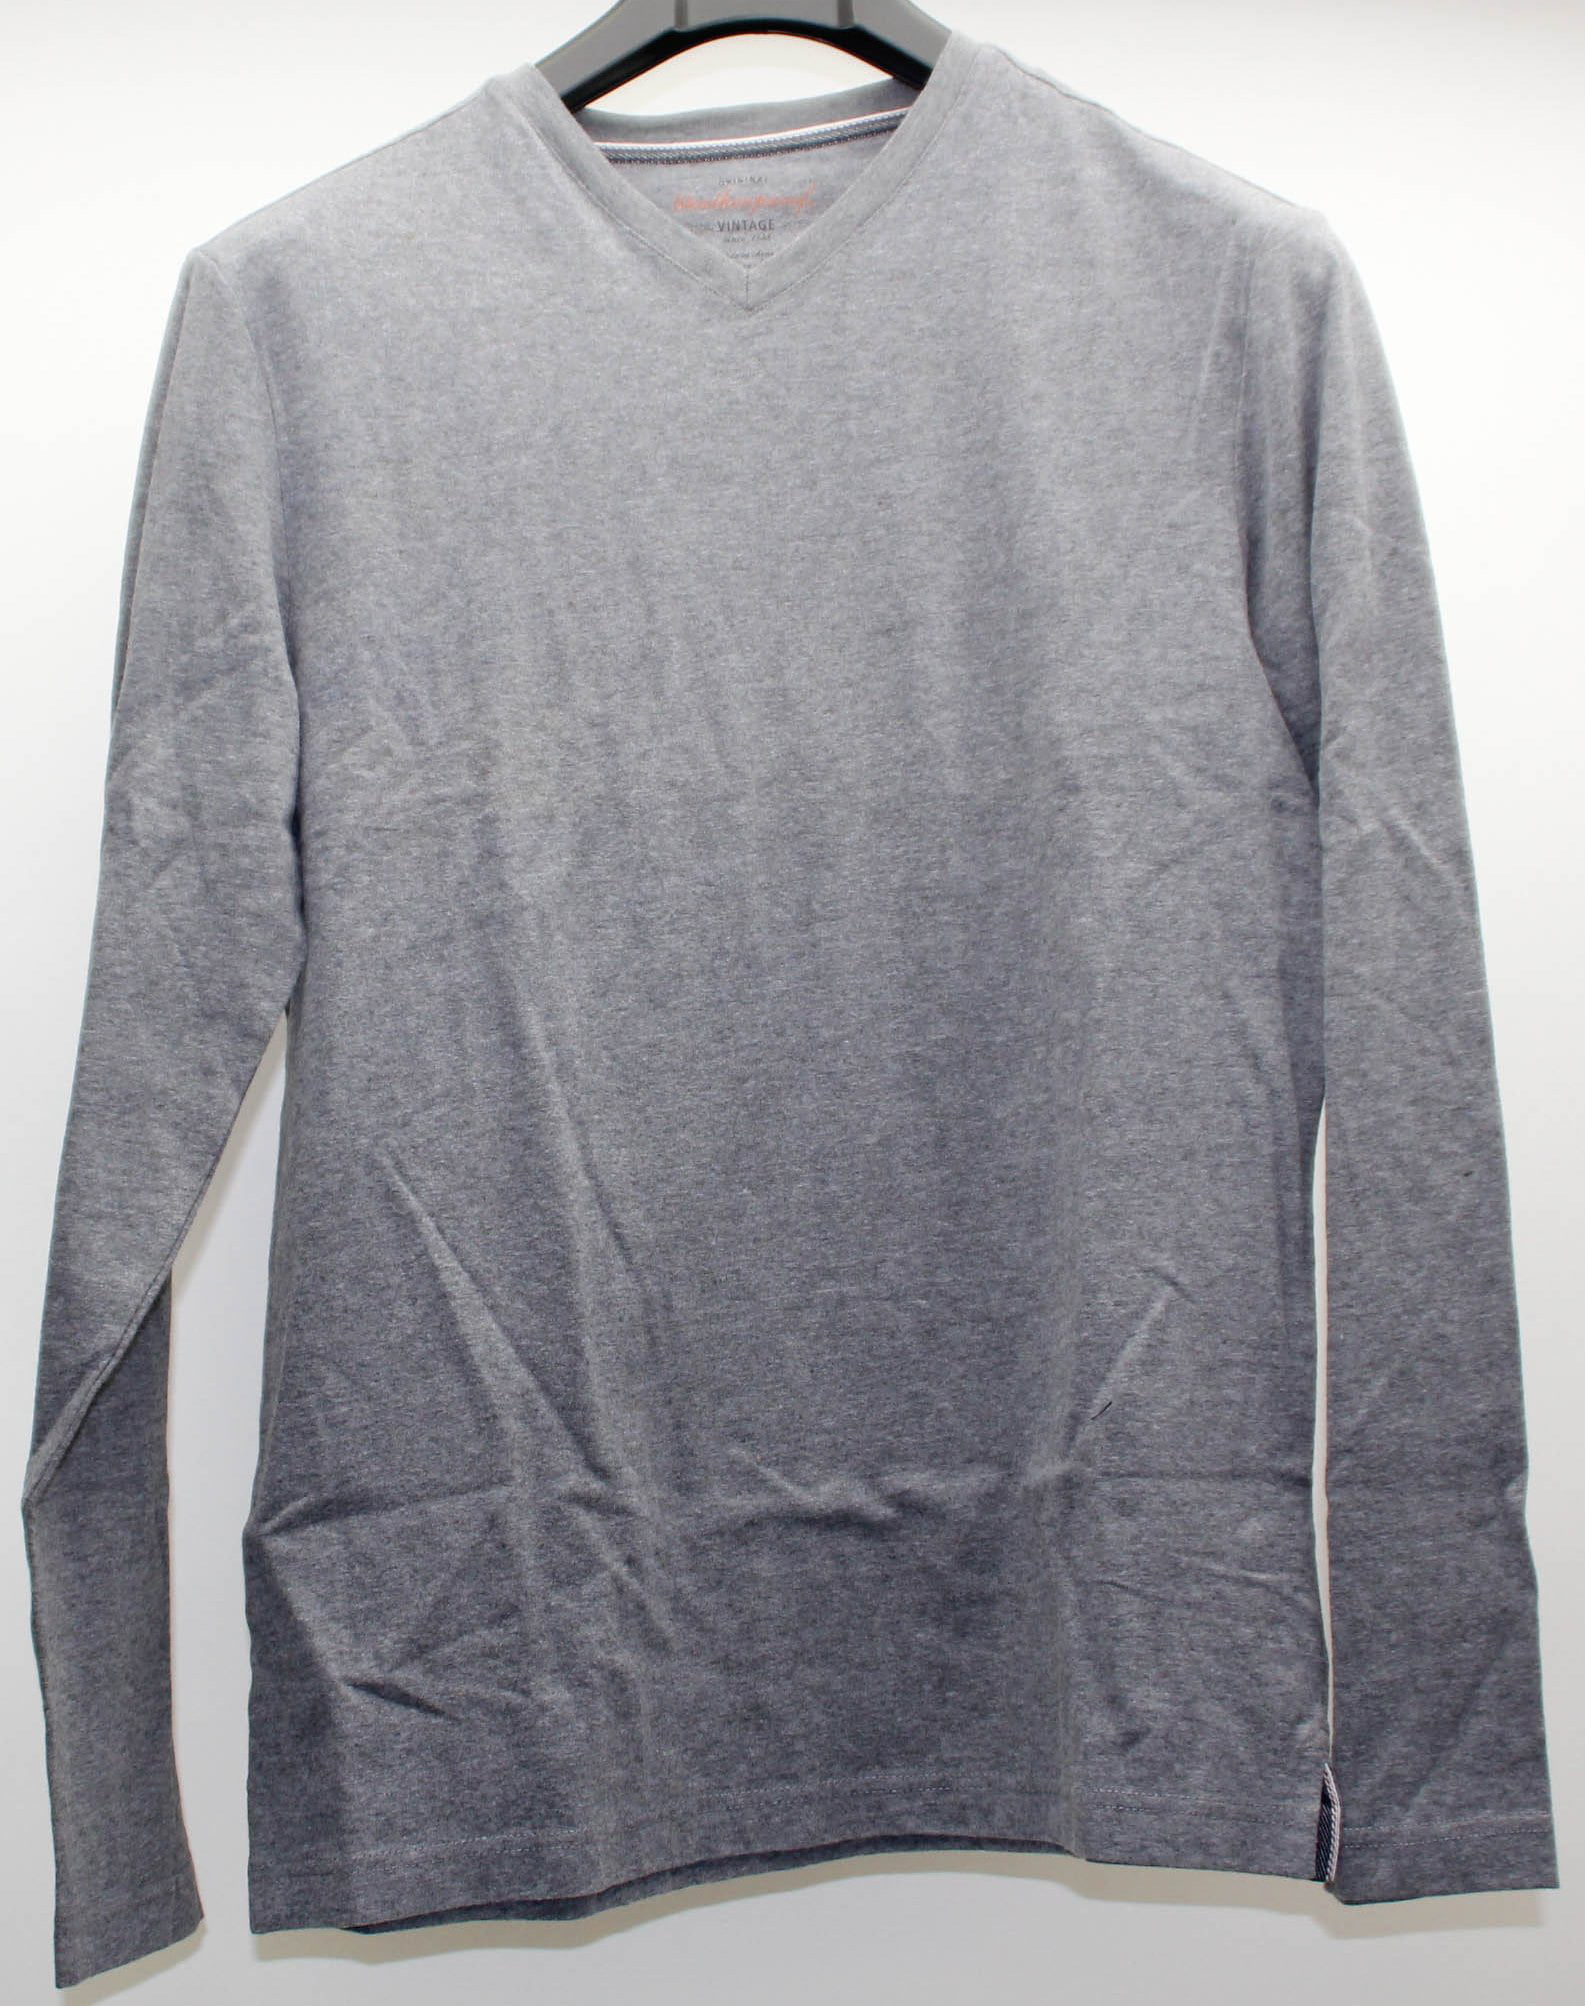 Weatherproof Vintage Men's Long Sleeve Shirt V Neck, Large - Gray ...